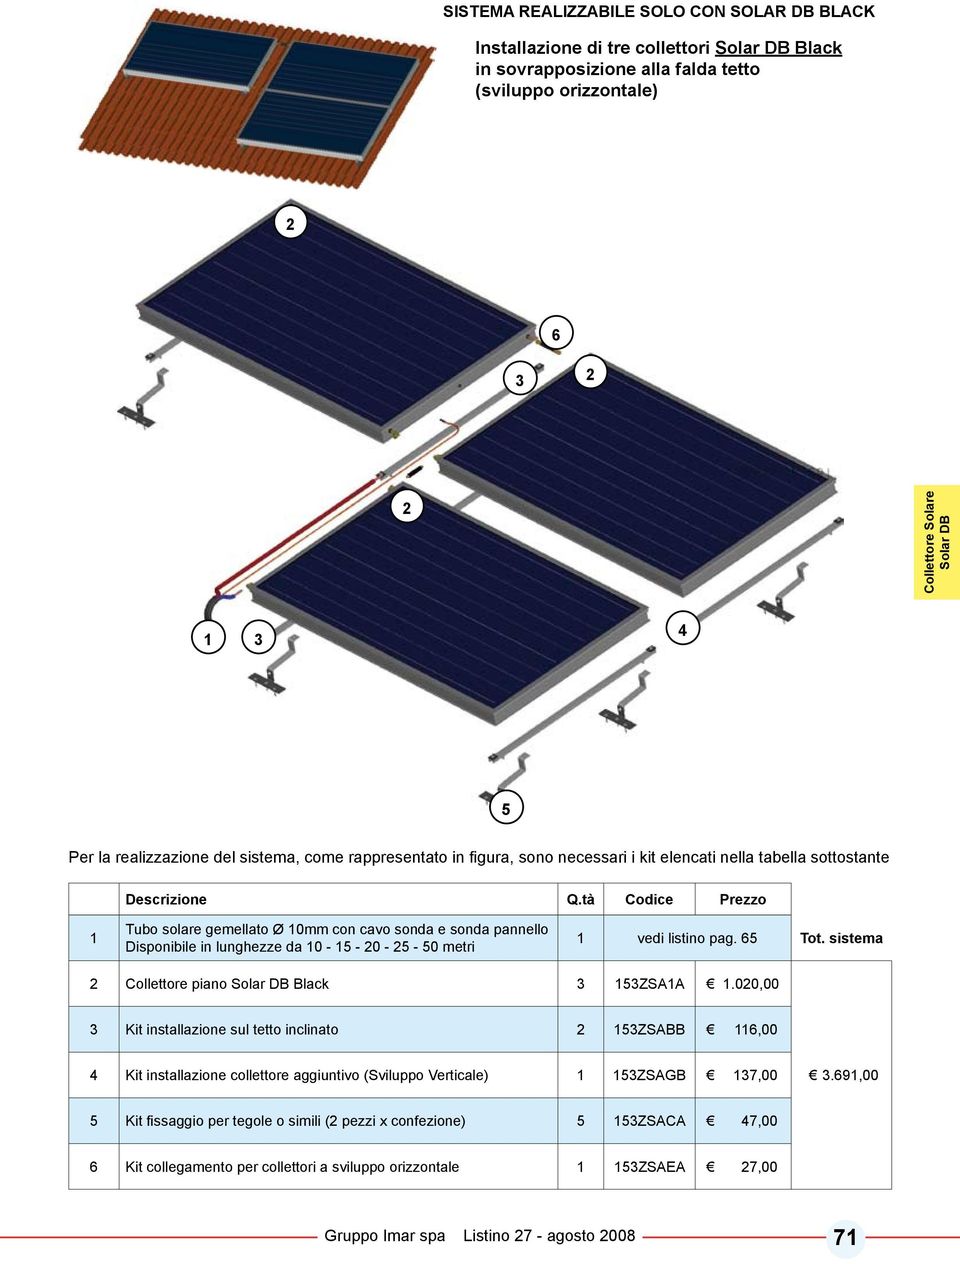 sistema Collettore piano Solar DB Black ZSAA.